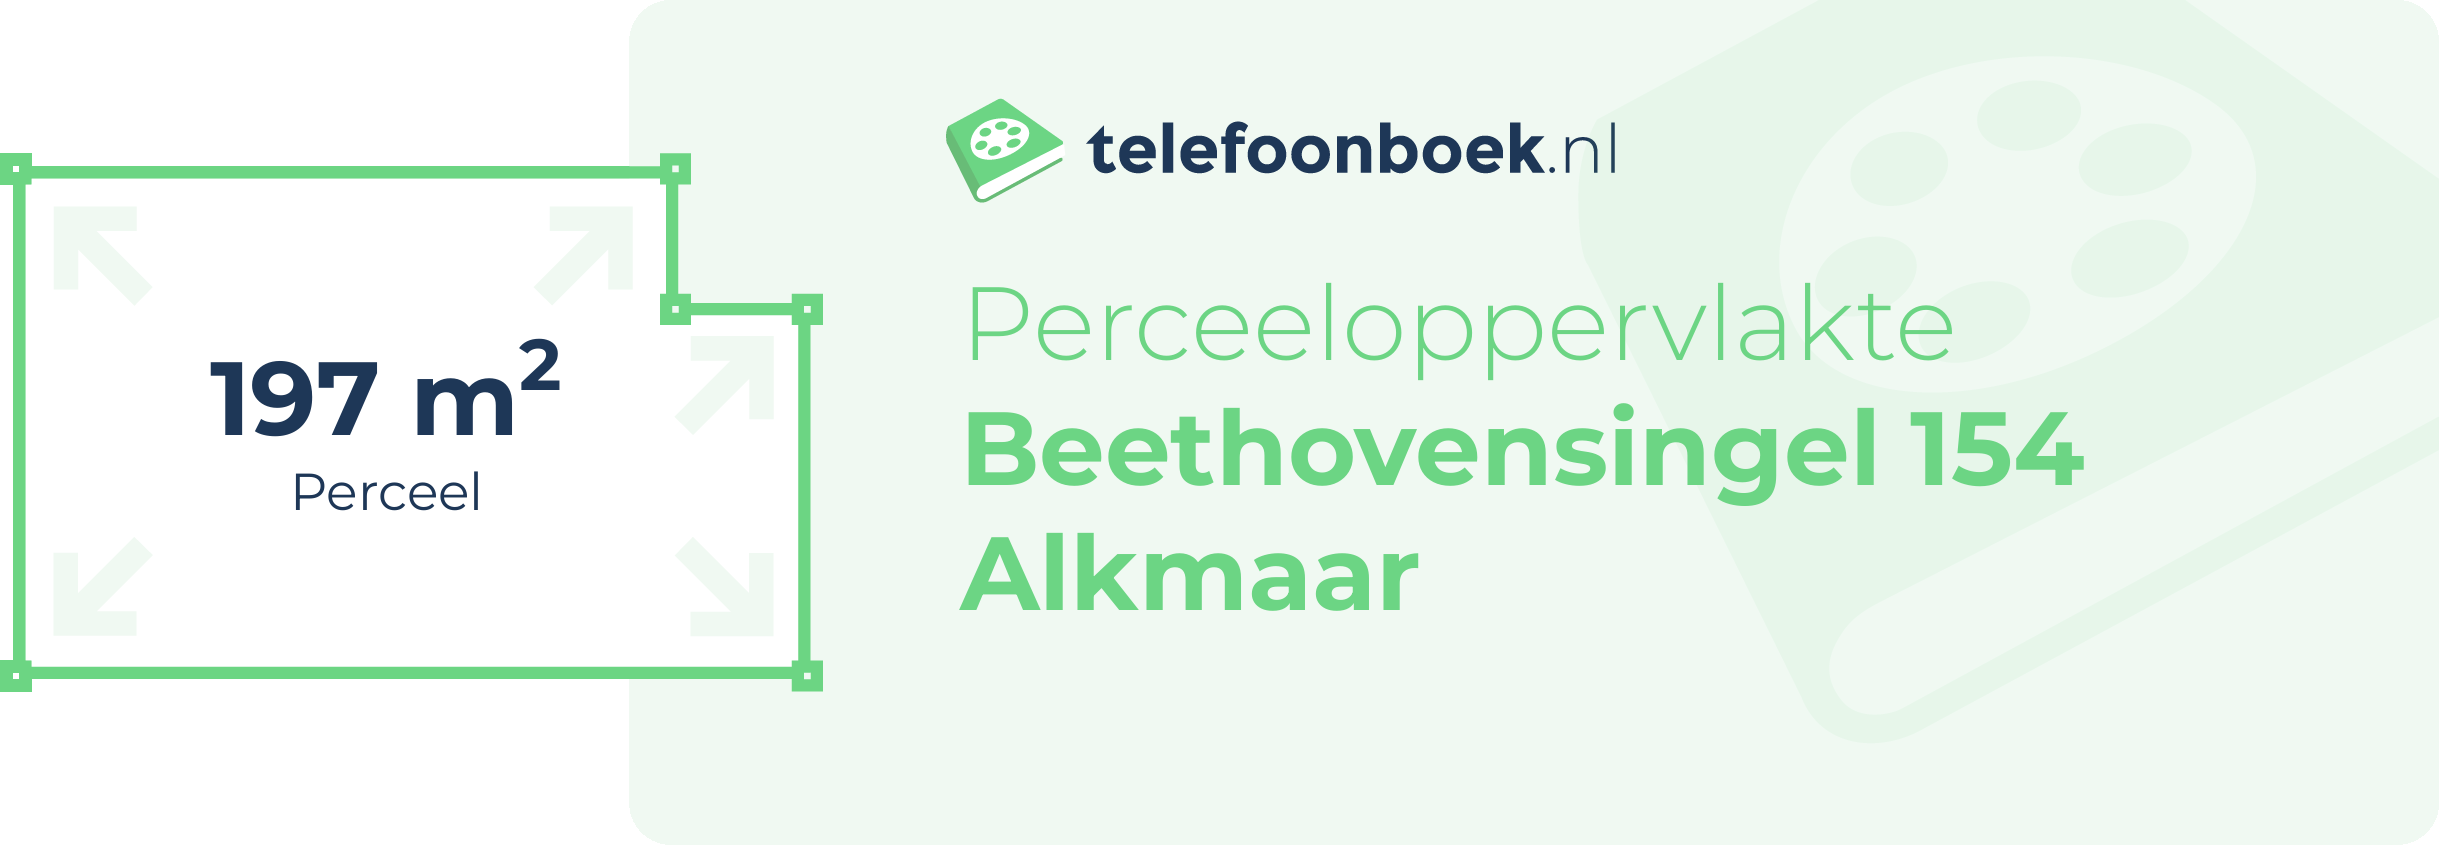 Perceeloppervlakte Beethovensingel 154 Alkmaar